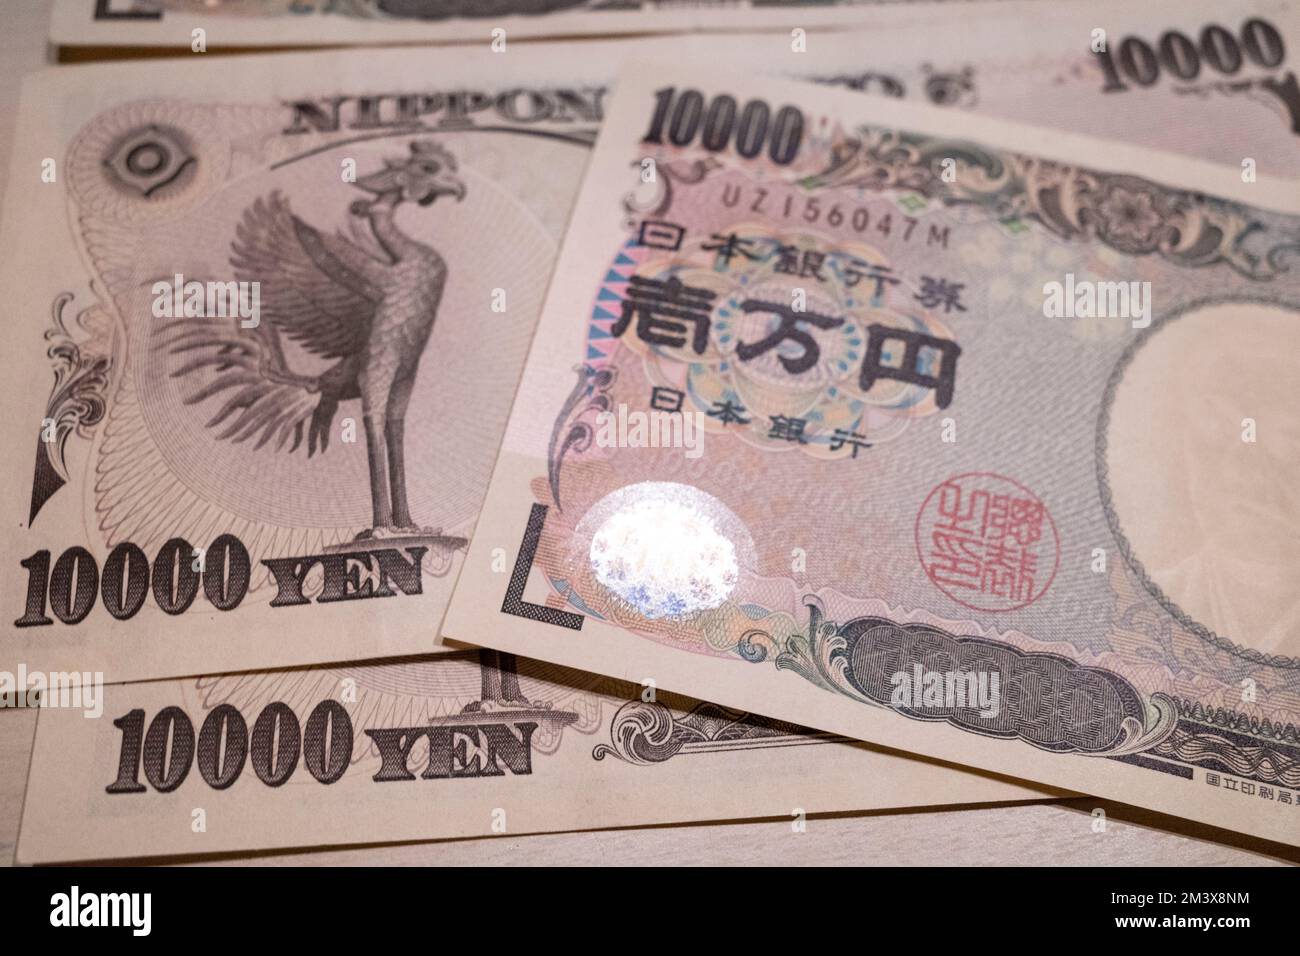 Tokyo, Giappone. 11th Dec, 2022. 10.000 banconote giapponesi Yen Â emesse dalla Banca del Giappone (Nippon Ginko) con Samurai e Meiji, educatore dell'era della riforma Fukuzawa Yukichi. Lo Yen giapponese è la terza valuta forex più scambiata al mondo e comunemente detenuta come valuta di riserva dopo il dollaro statunitense (USD $) e l'euro (EUR). Recentemente in mezzo ad un'elevata inflazione negli Stati Uniti, spingendo la Federal Reserve degli Stati Uniti ad aumentare i tassi di interesse, inviando il valore degli Stati Uniti Il dollaro alle stelle contro le valute estere ha svalutato lo Yen, causando inflazione a cascata in Giappone a causa della re del paese Foto Stock